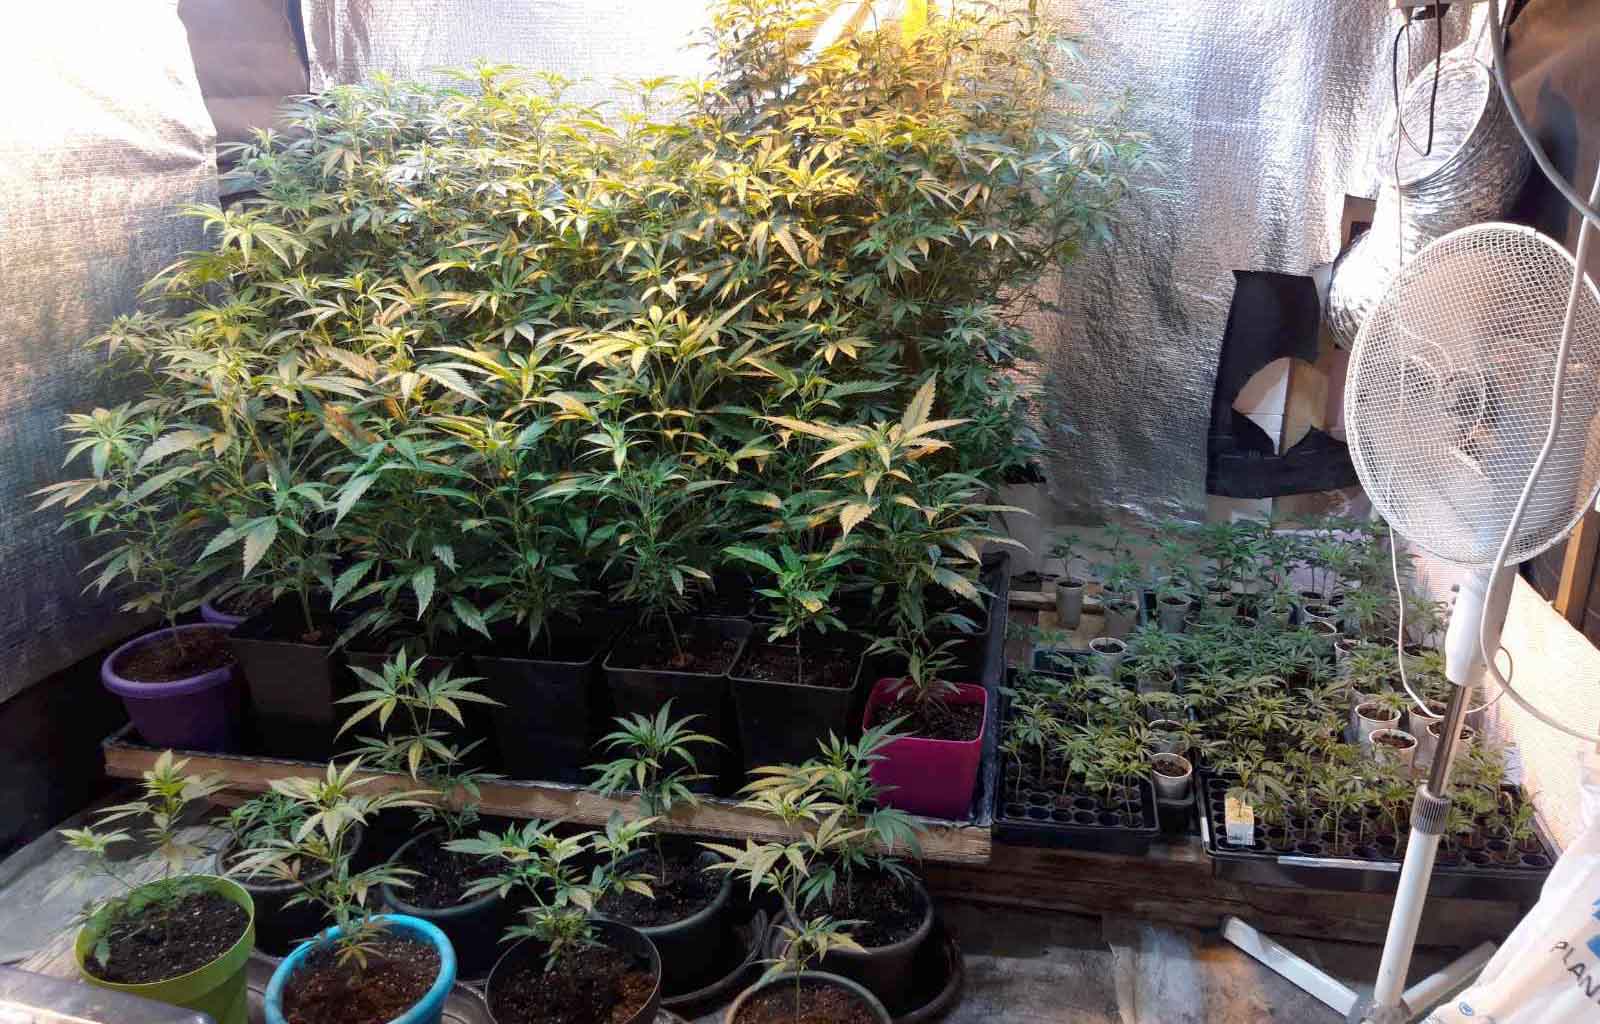 Otkrivena laboratorija za proizvodnju marihuane, uhapšene dve osobe